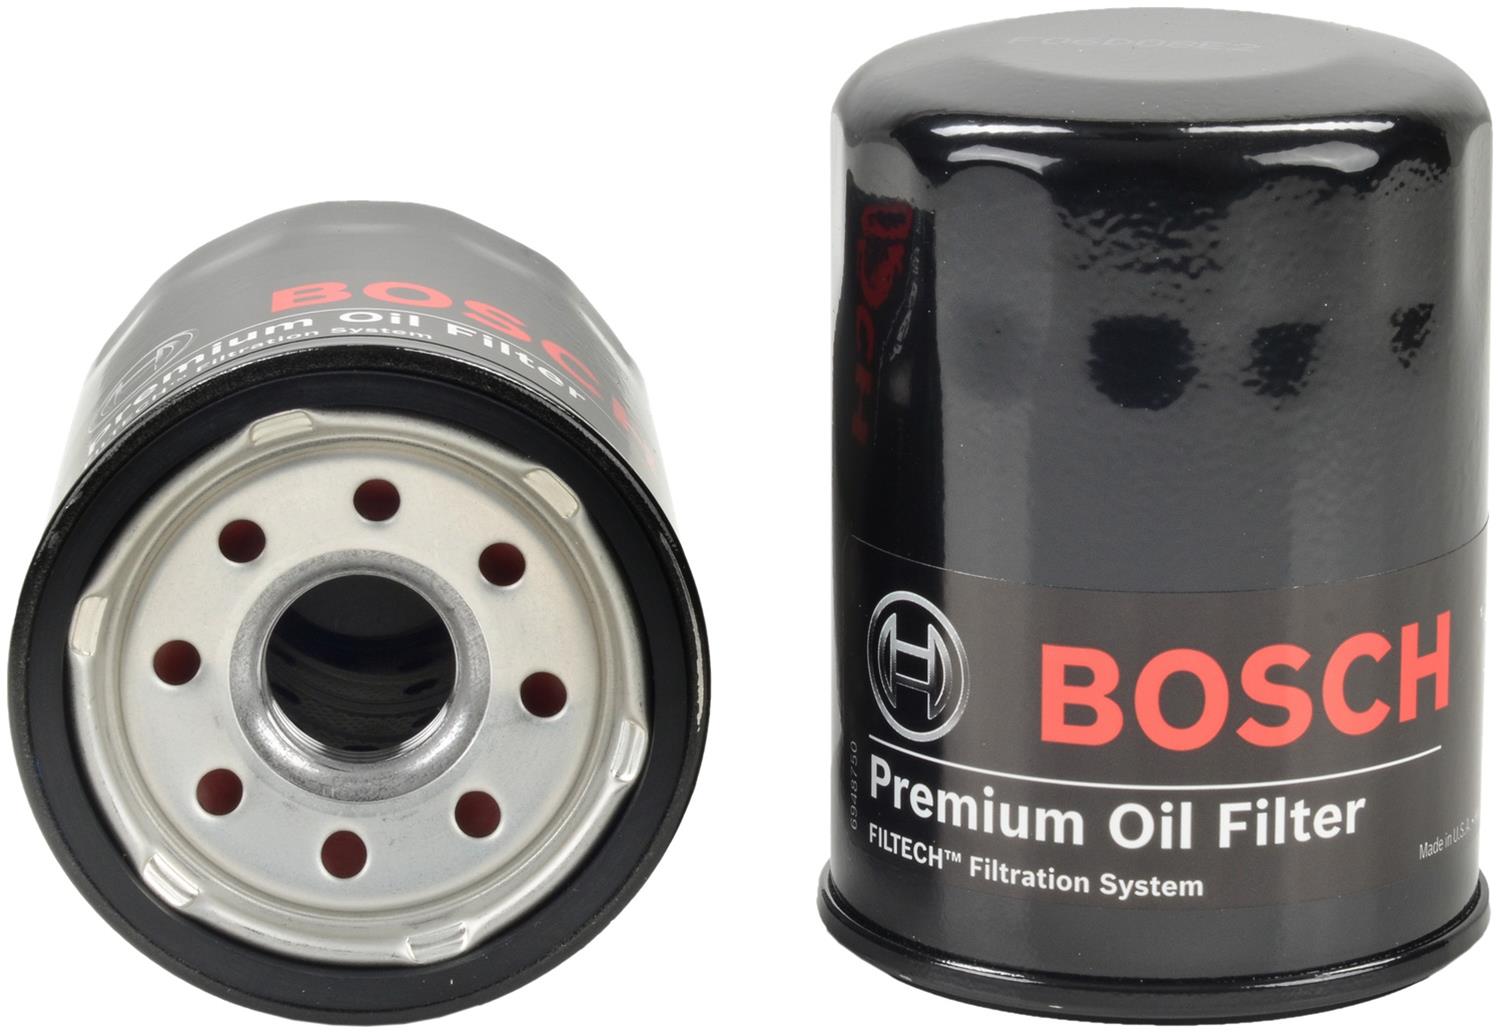 Regenjas zak tragedie Bosch Automotive 3323 Bosch Premium Oil Filters | Summit Racing